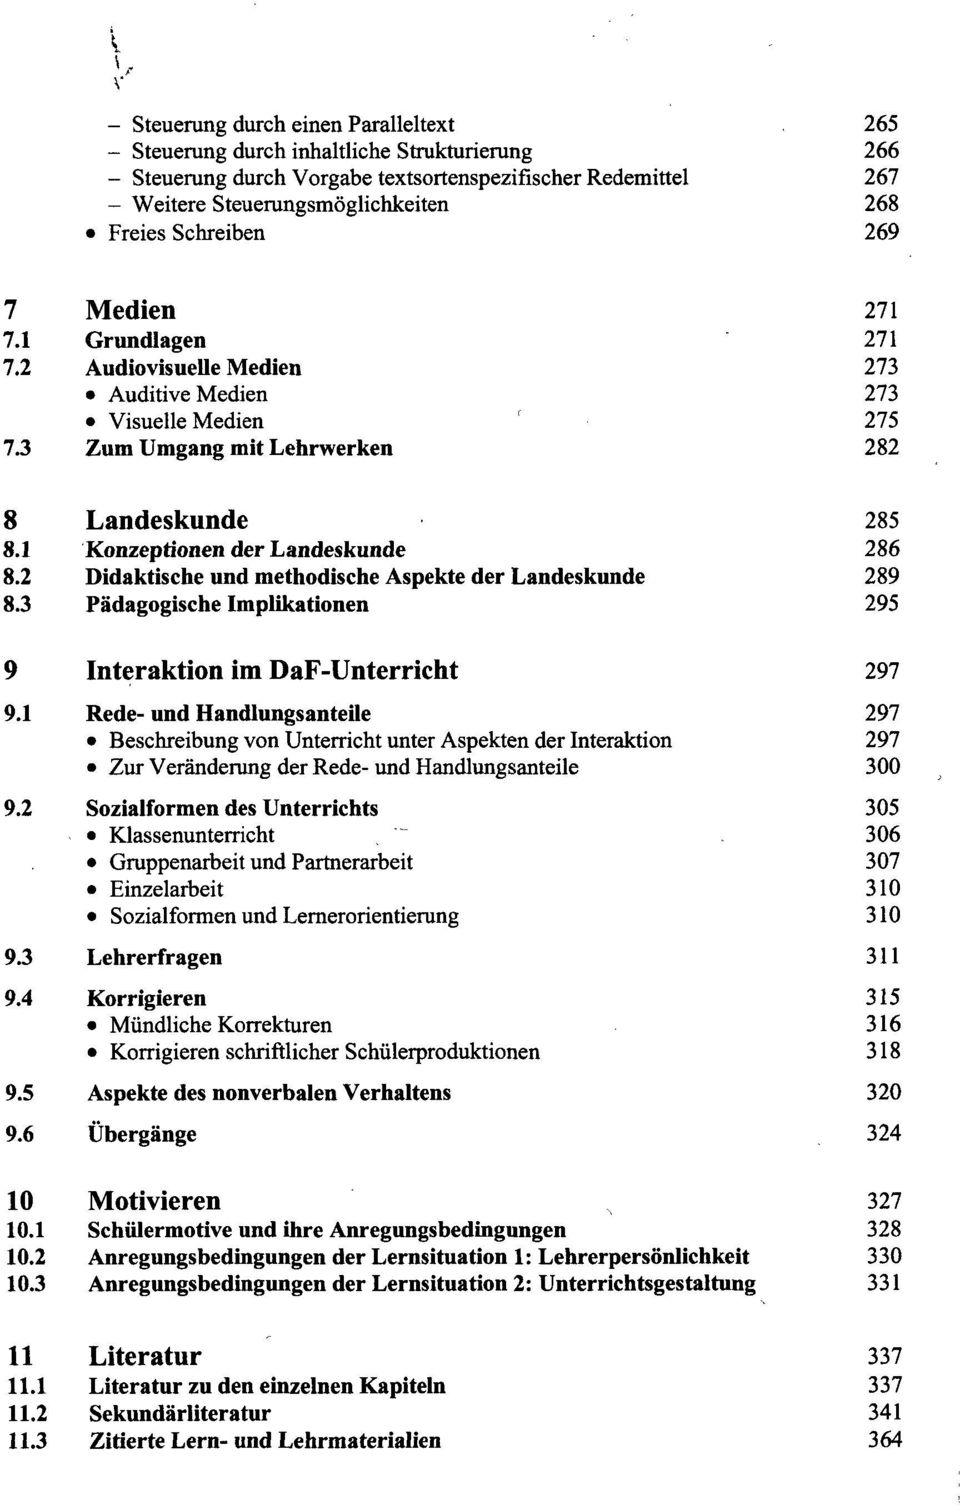 1 Konzeptionen der Landeskunde 286 8.2 Didaktische und methodische Aspekte der Landeskunde 289 8.3 Pädagogische Implikationen 295 9 Interaktion im DaF-Unterricht 297 9.